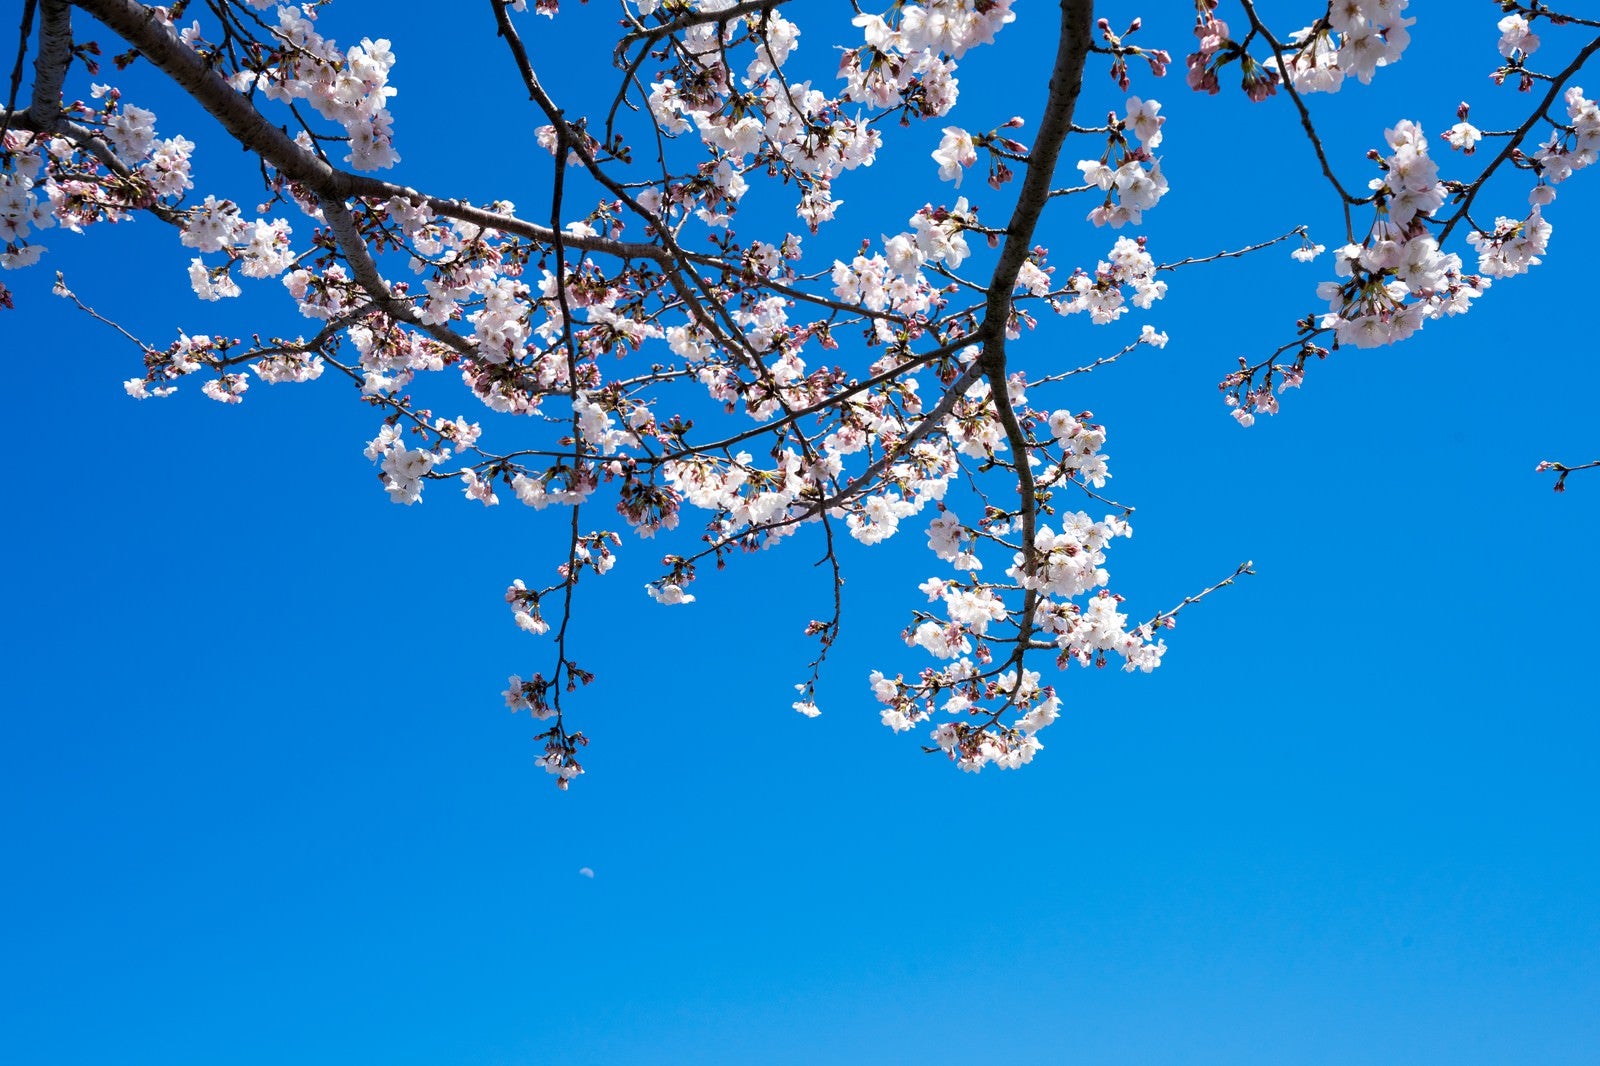 「快晴の空と桜」の写真